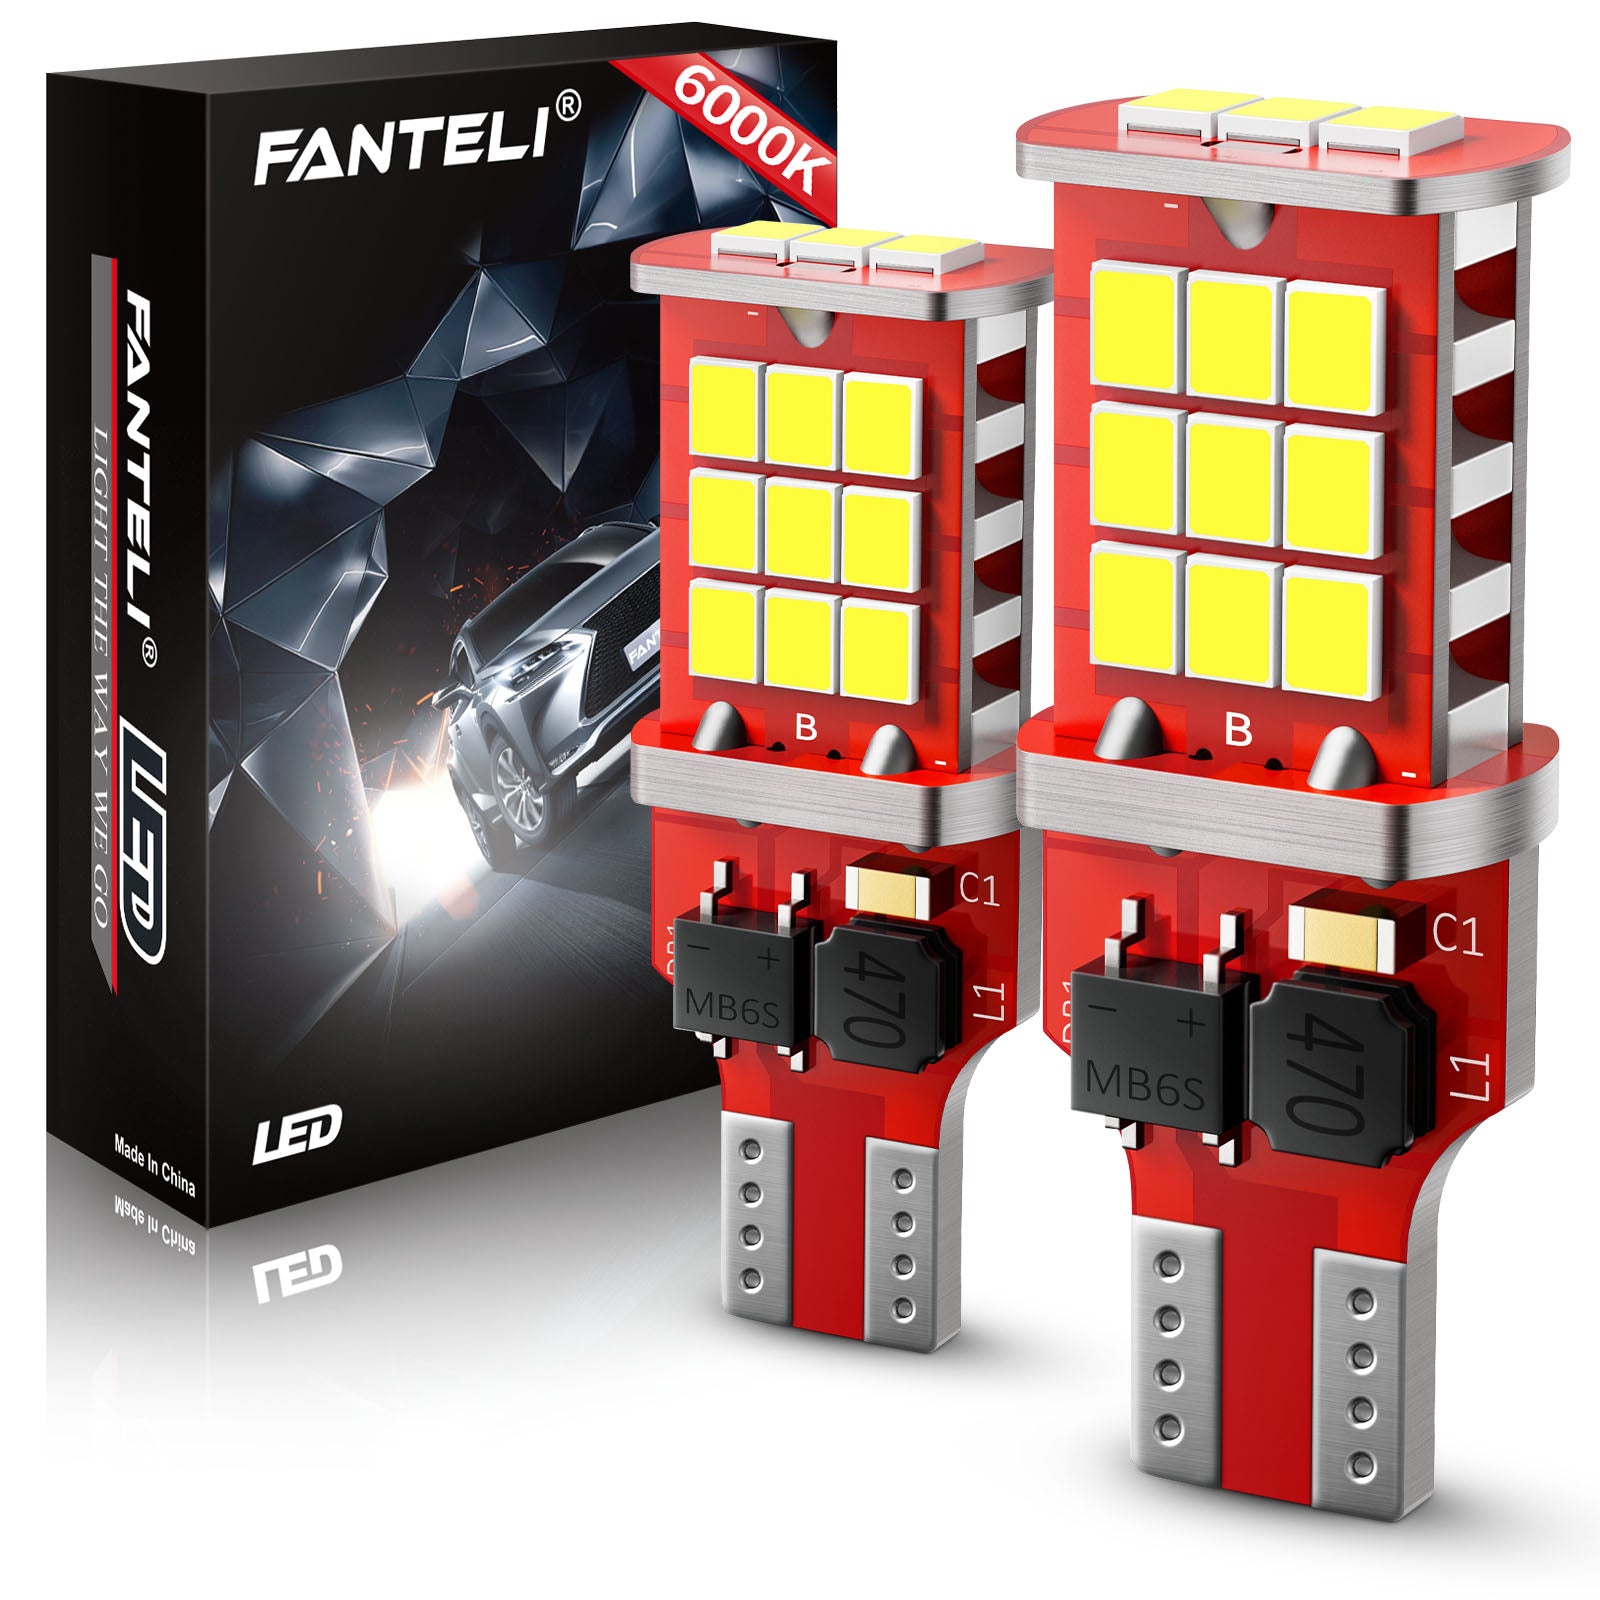 FANTELI 921 LED Bulb 6000K White LED Reverse Lights, High Power 921 Bu